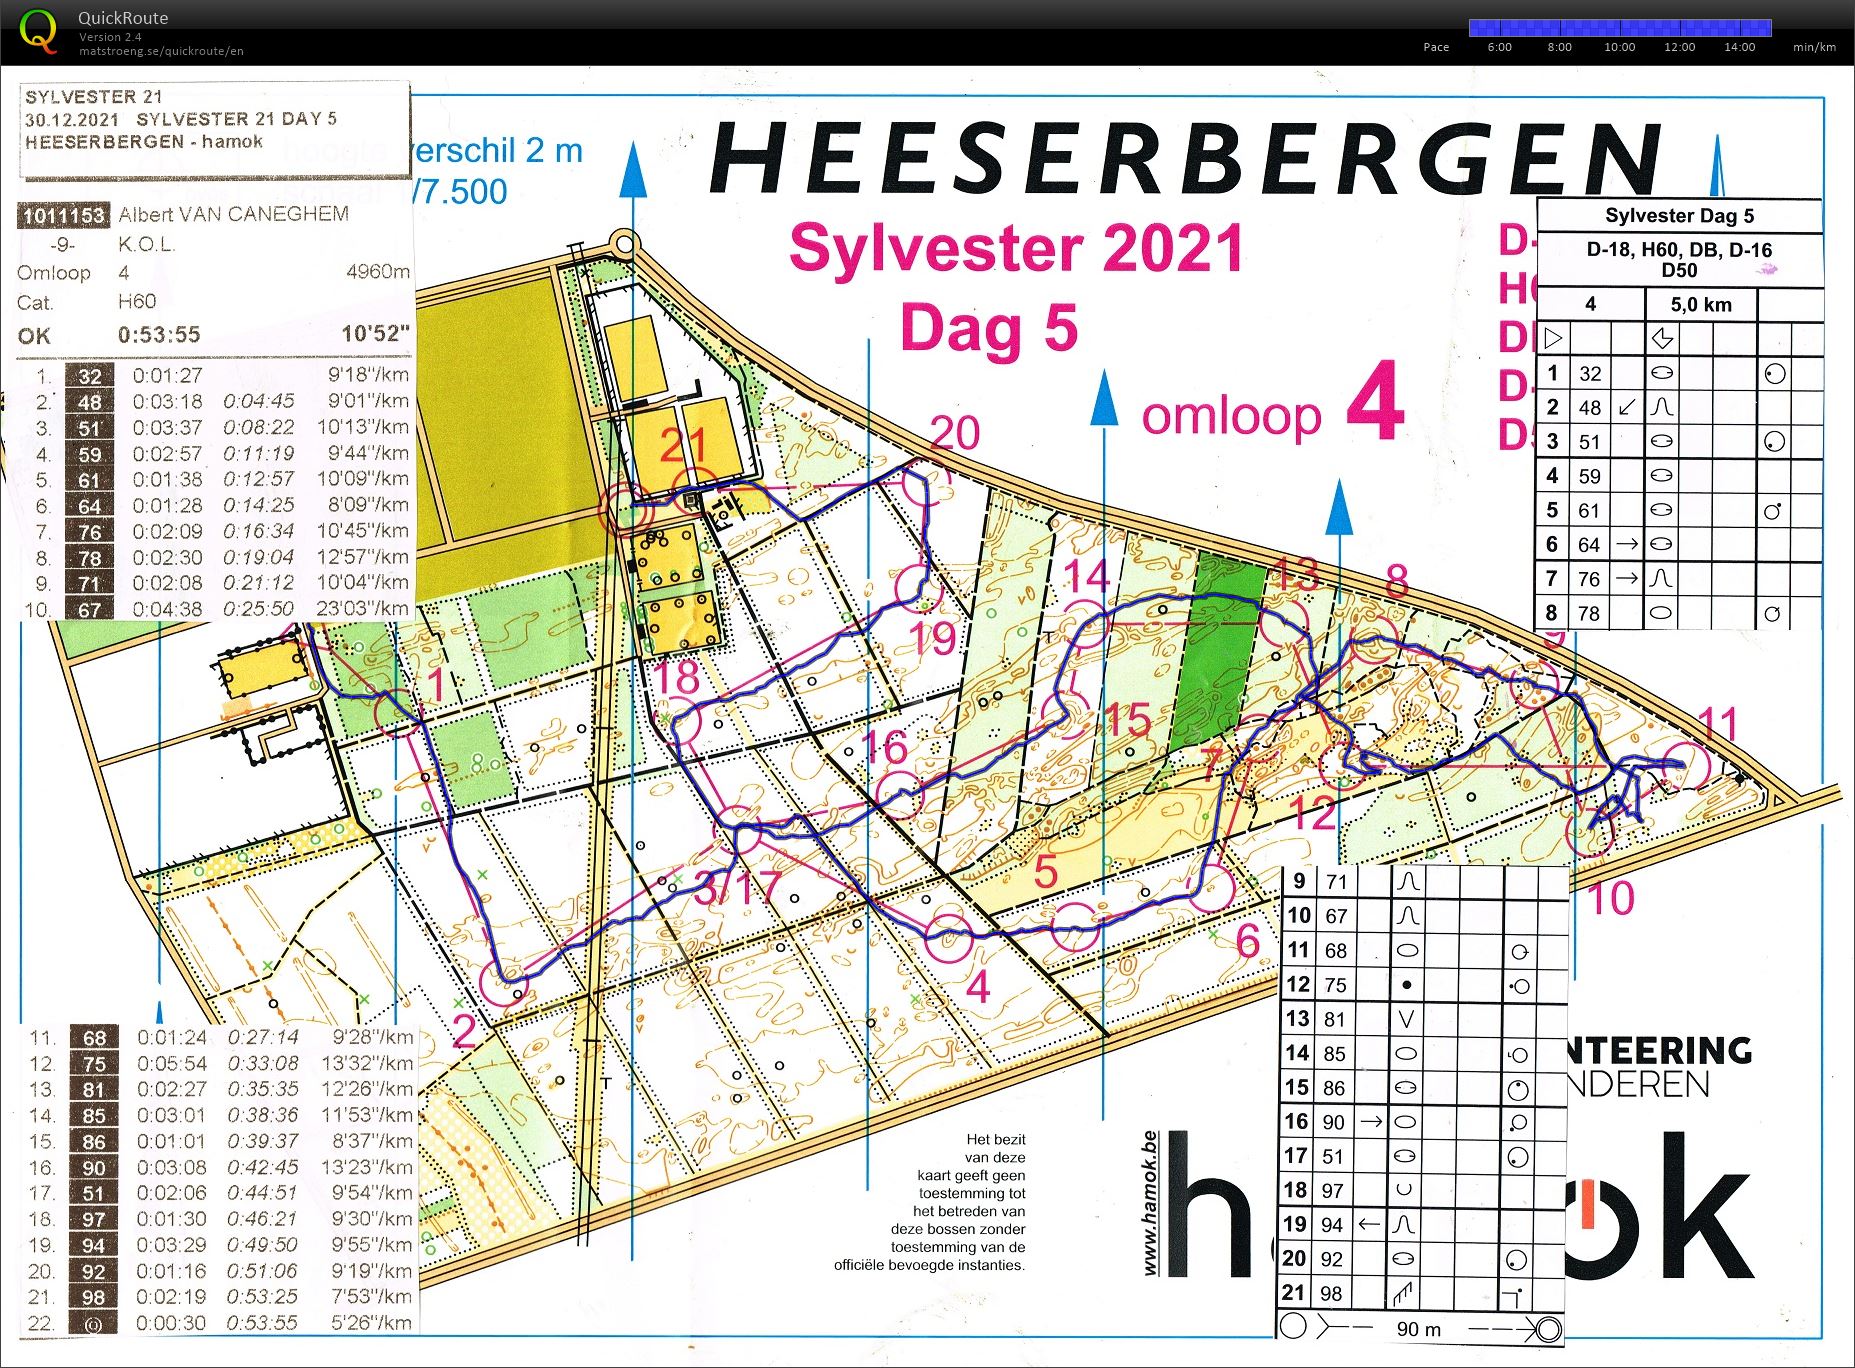 Heeserbergen (30/12/2021)